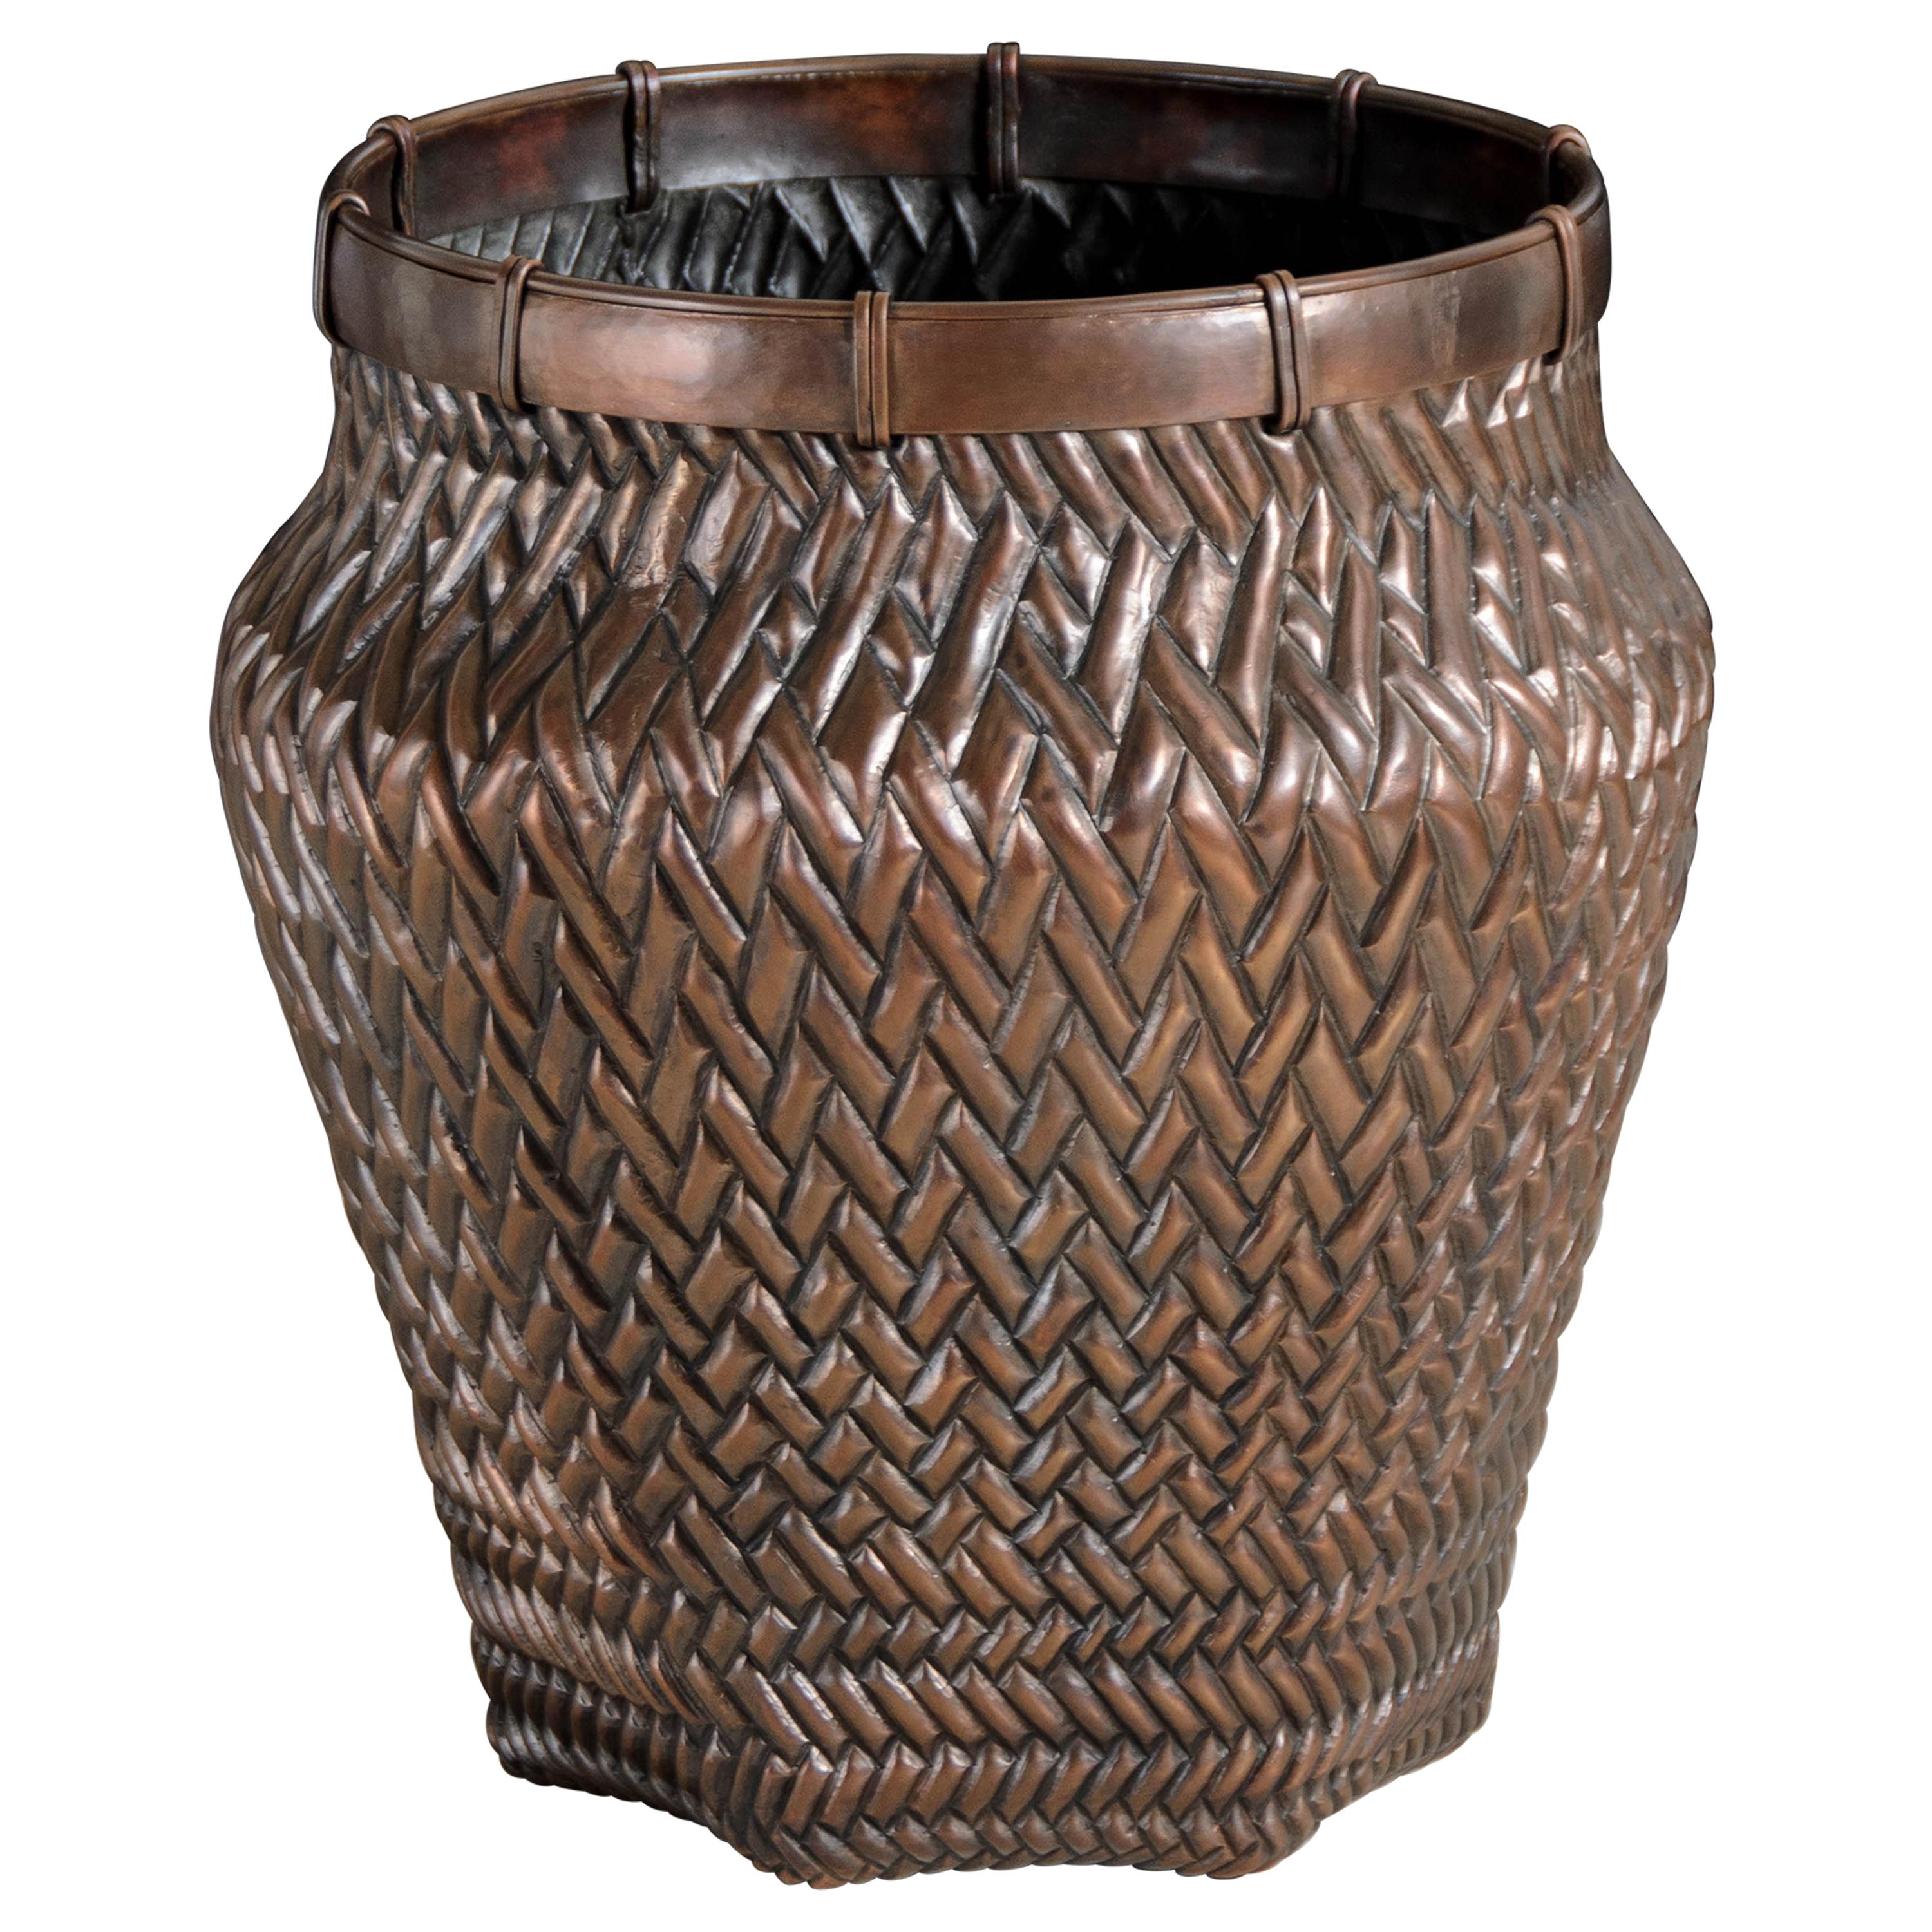 Zeitgenössische Vase im Webdesign aus Kupfer von Robert Kuo, limitierte Auflage